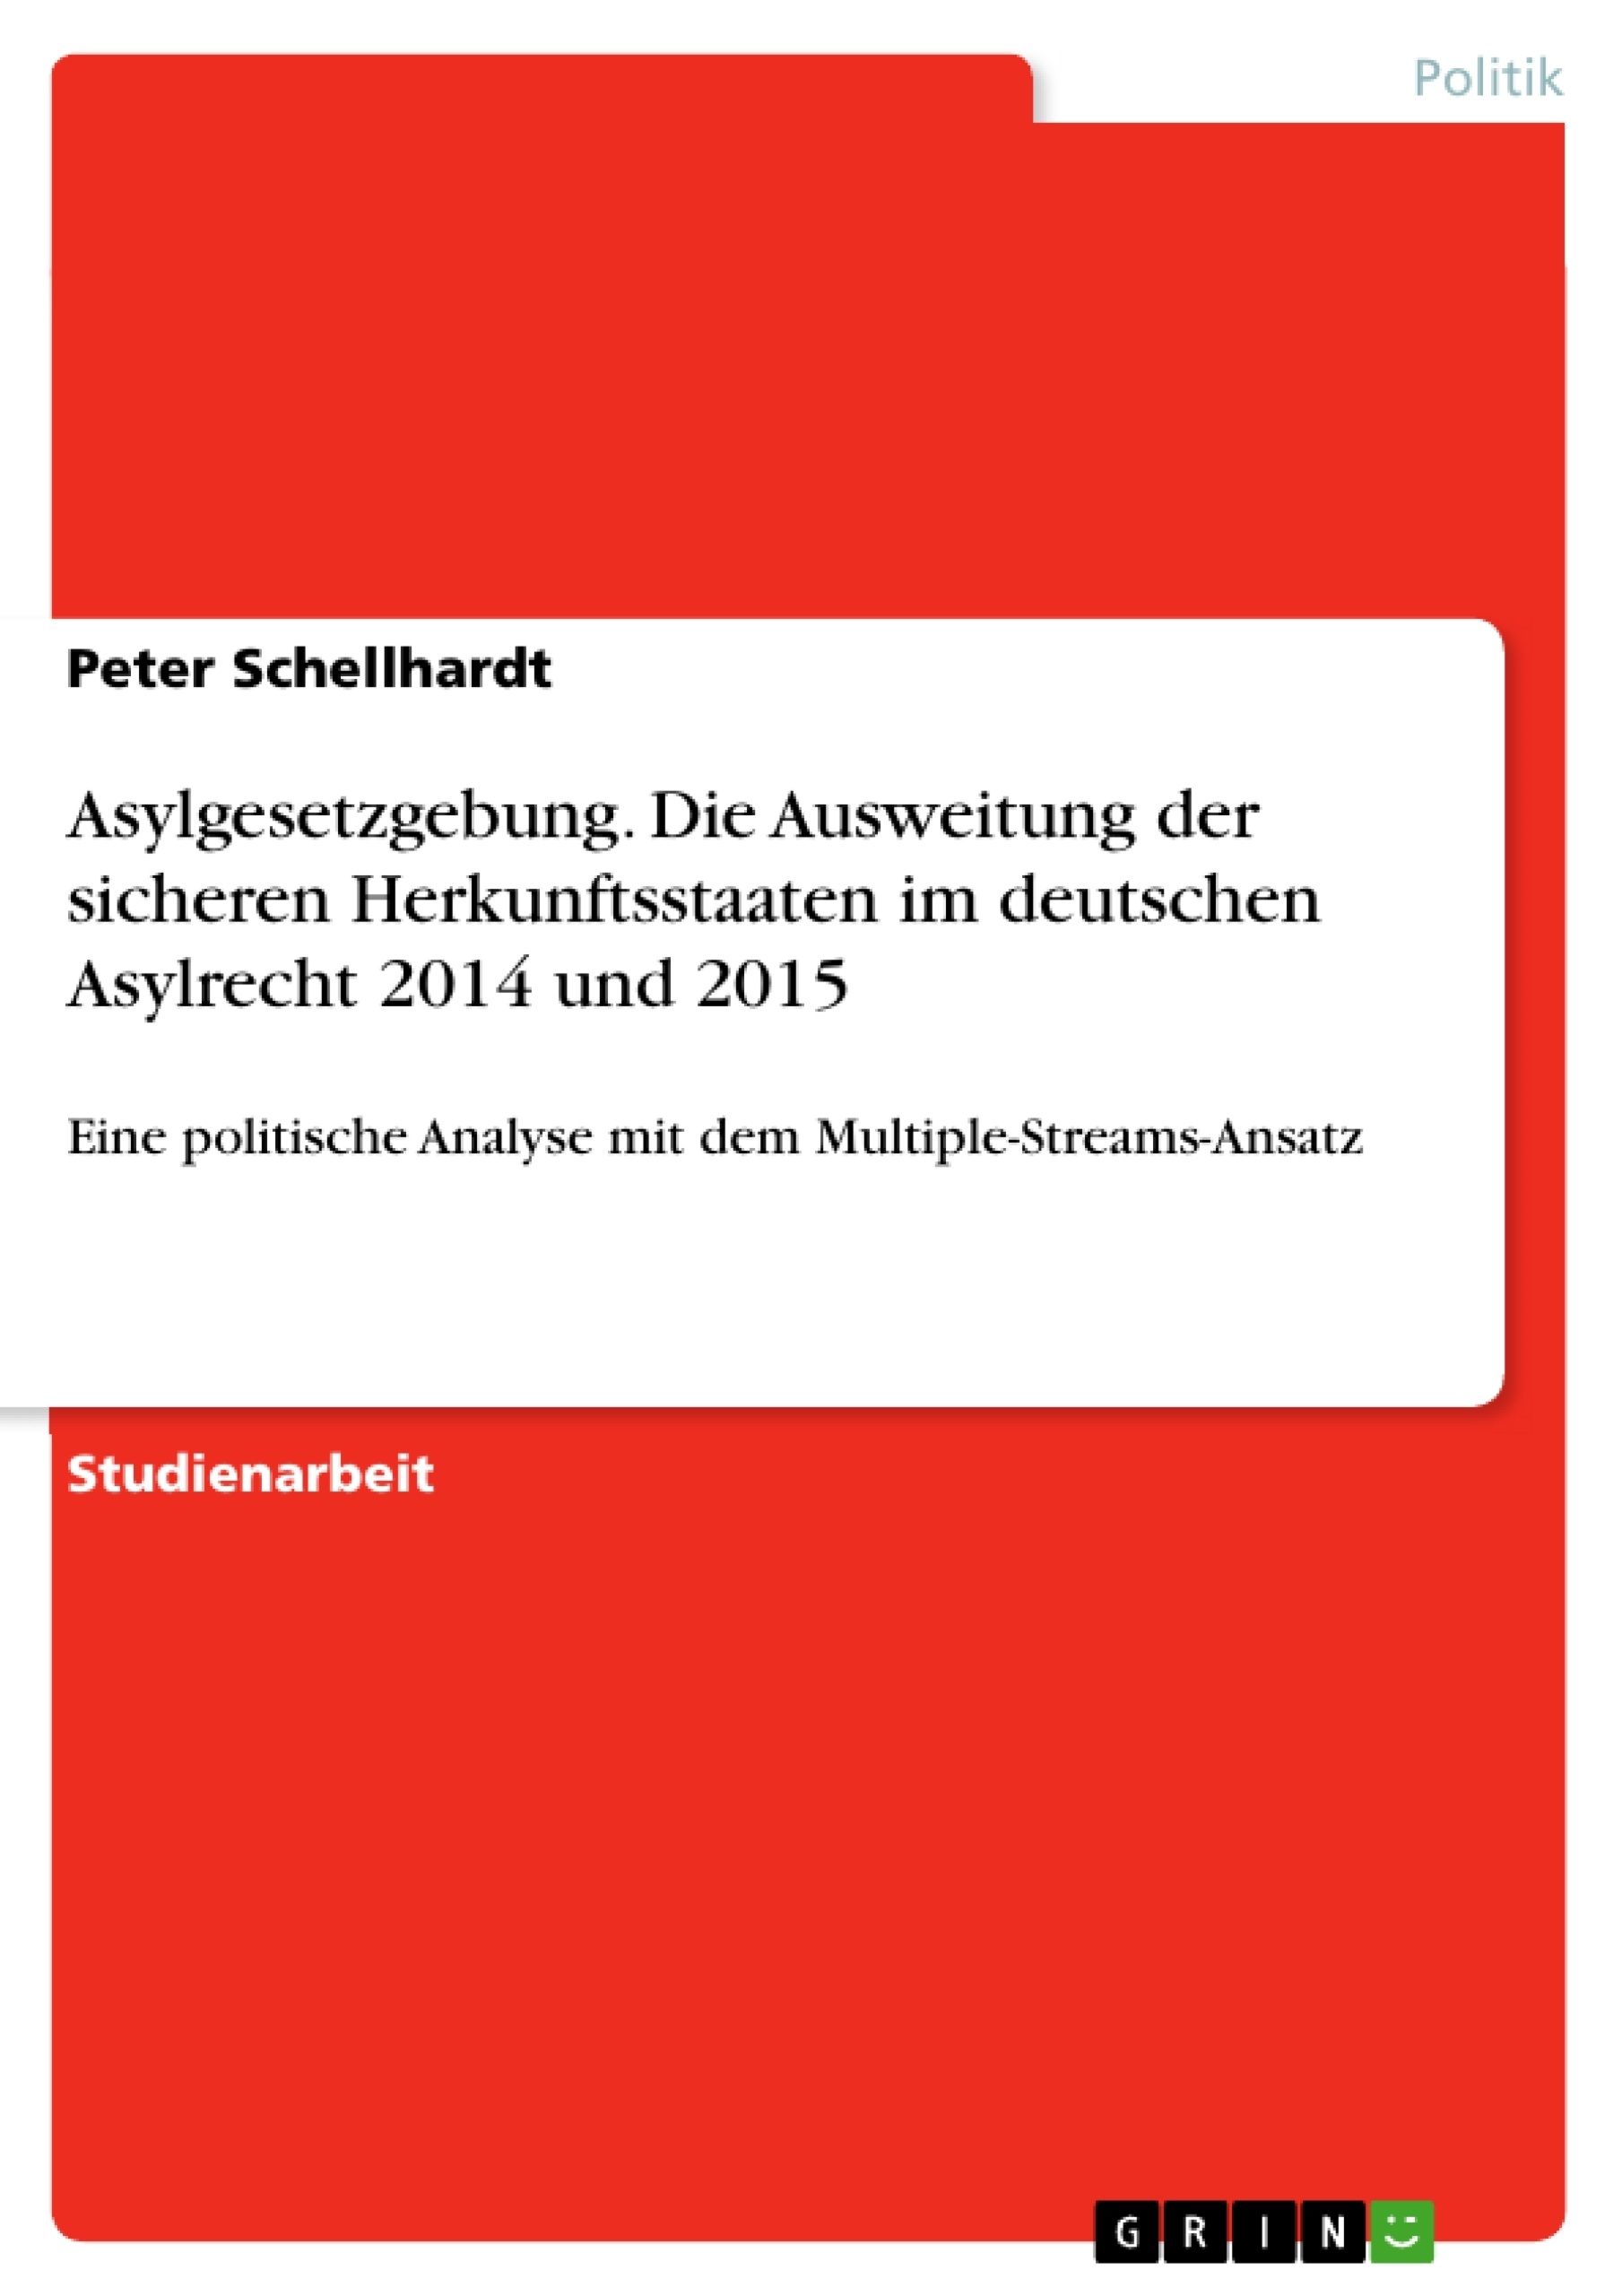 Title: Asylgesetzgebung. Die Ausweitung der sicheren Herkunftsstaaten im deutschen Asylrecht 2014 und 2015